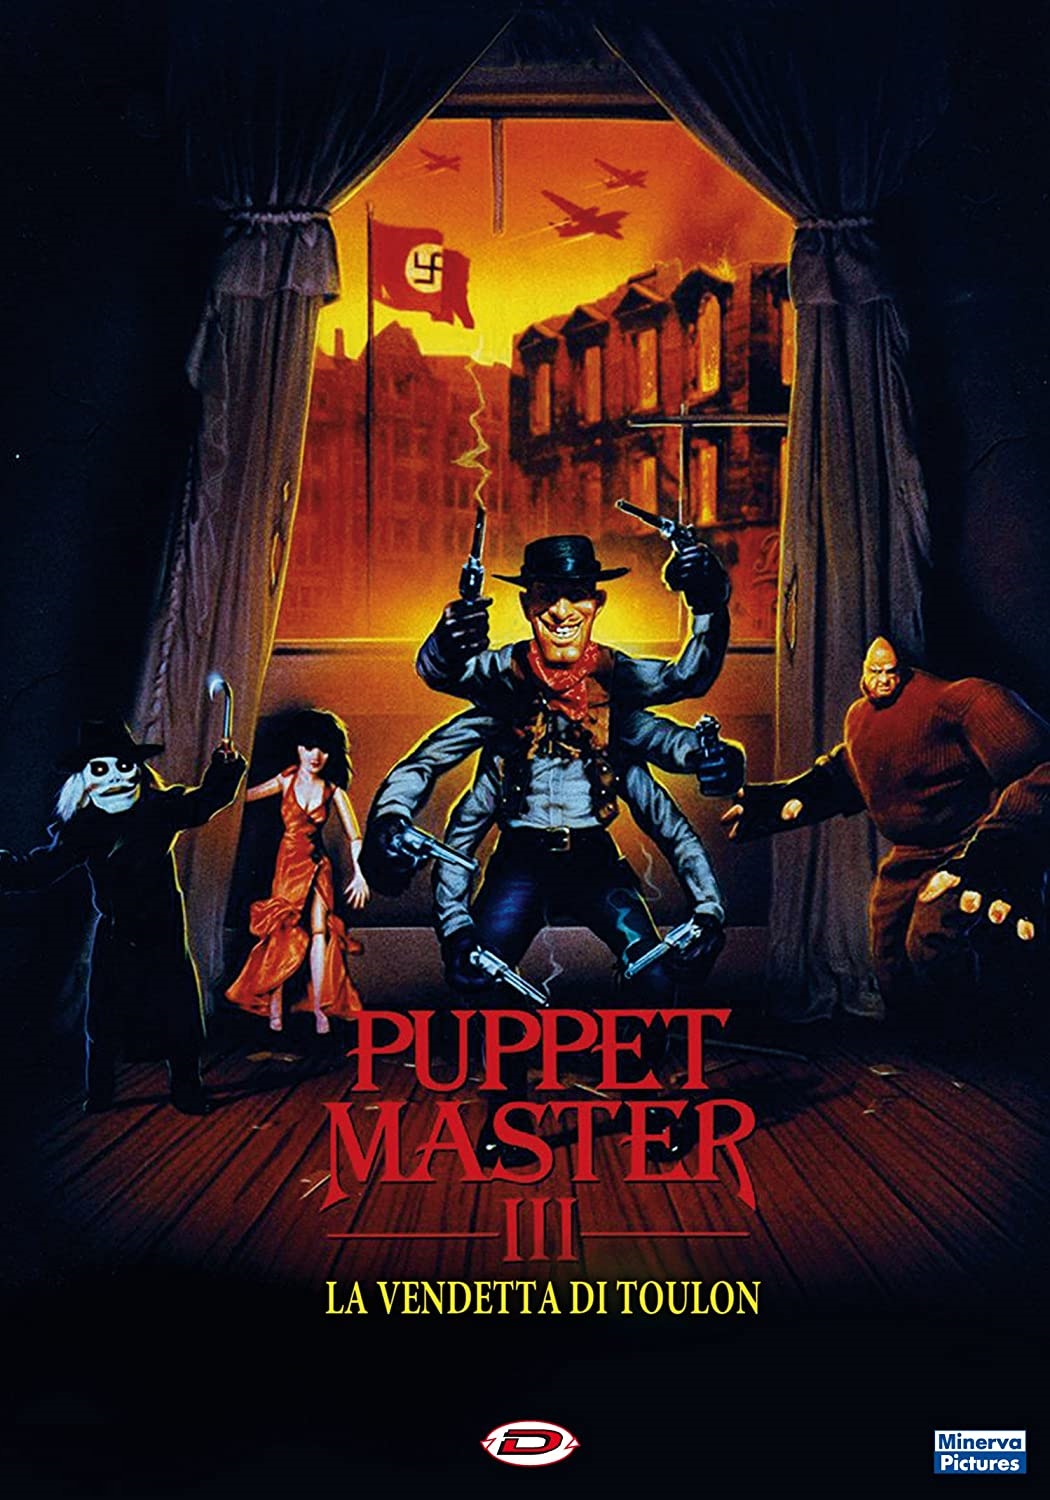 Puppet Master III – La vendetta di Toulon [HD] (1991)